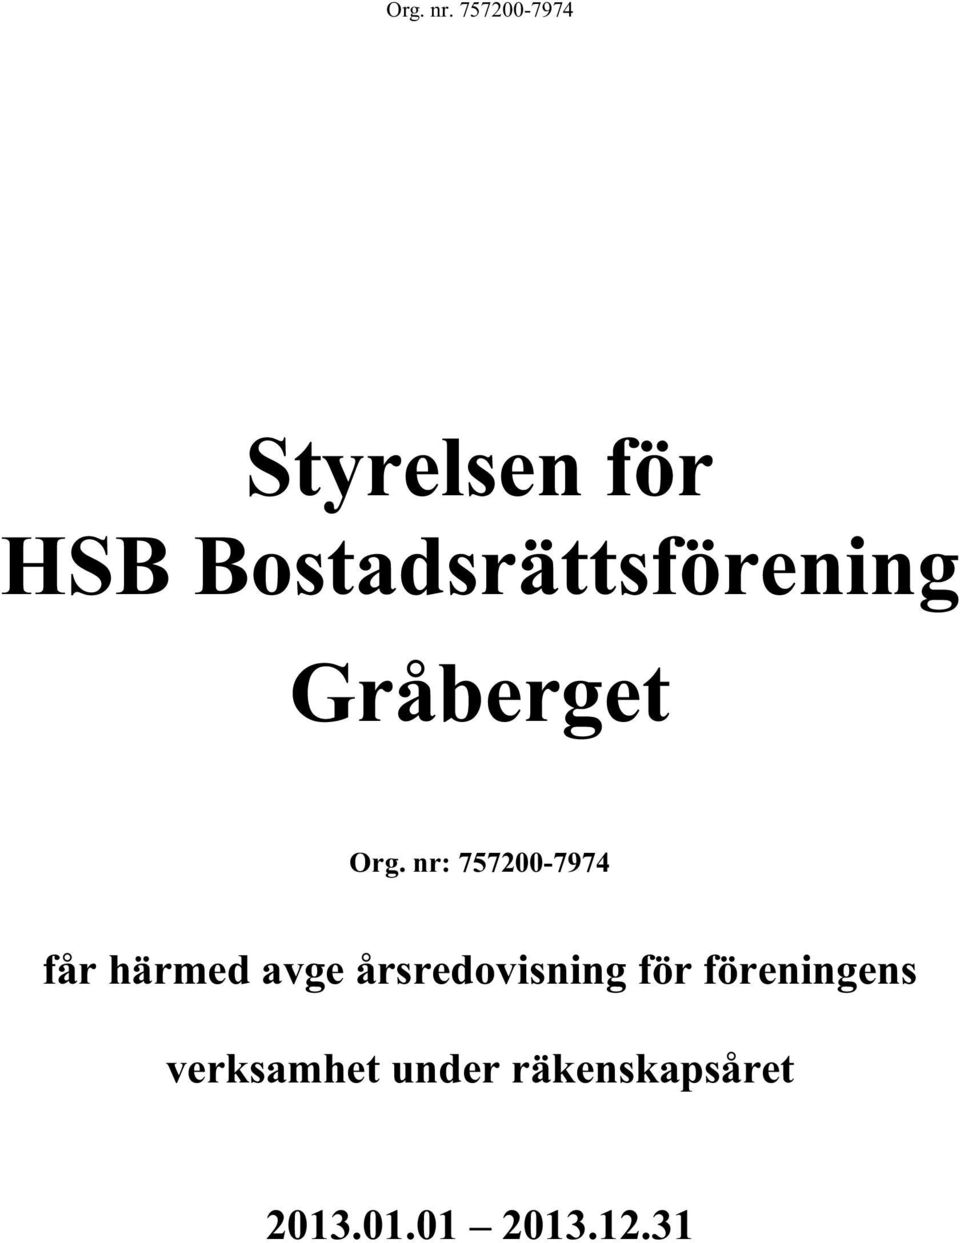 Bostadsrättsförening Gråberget Org.